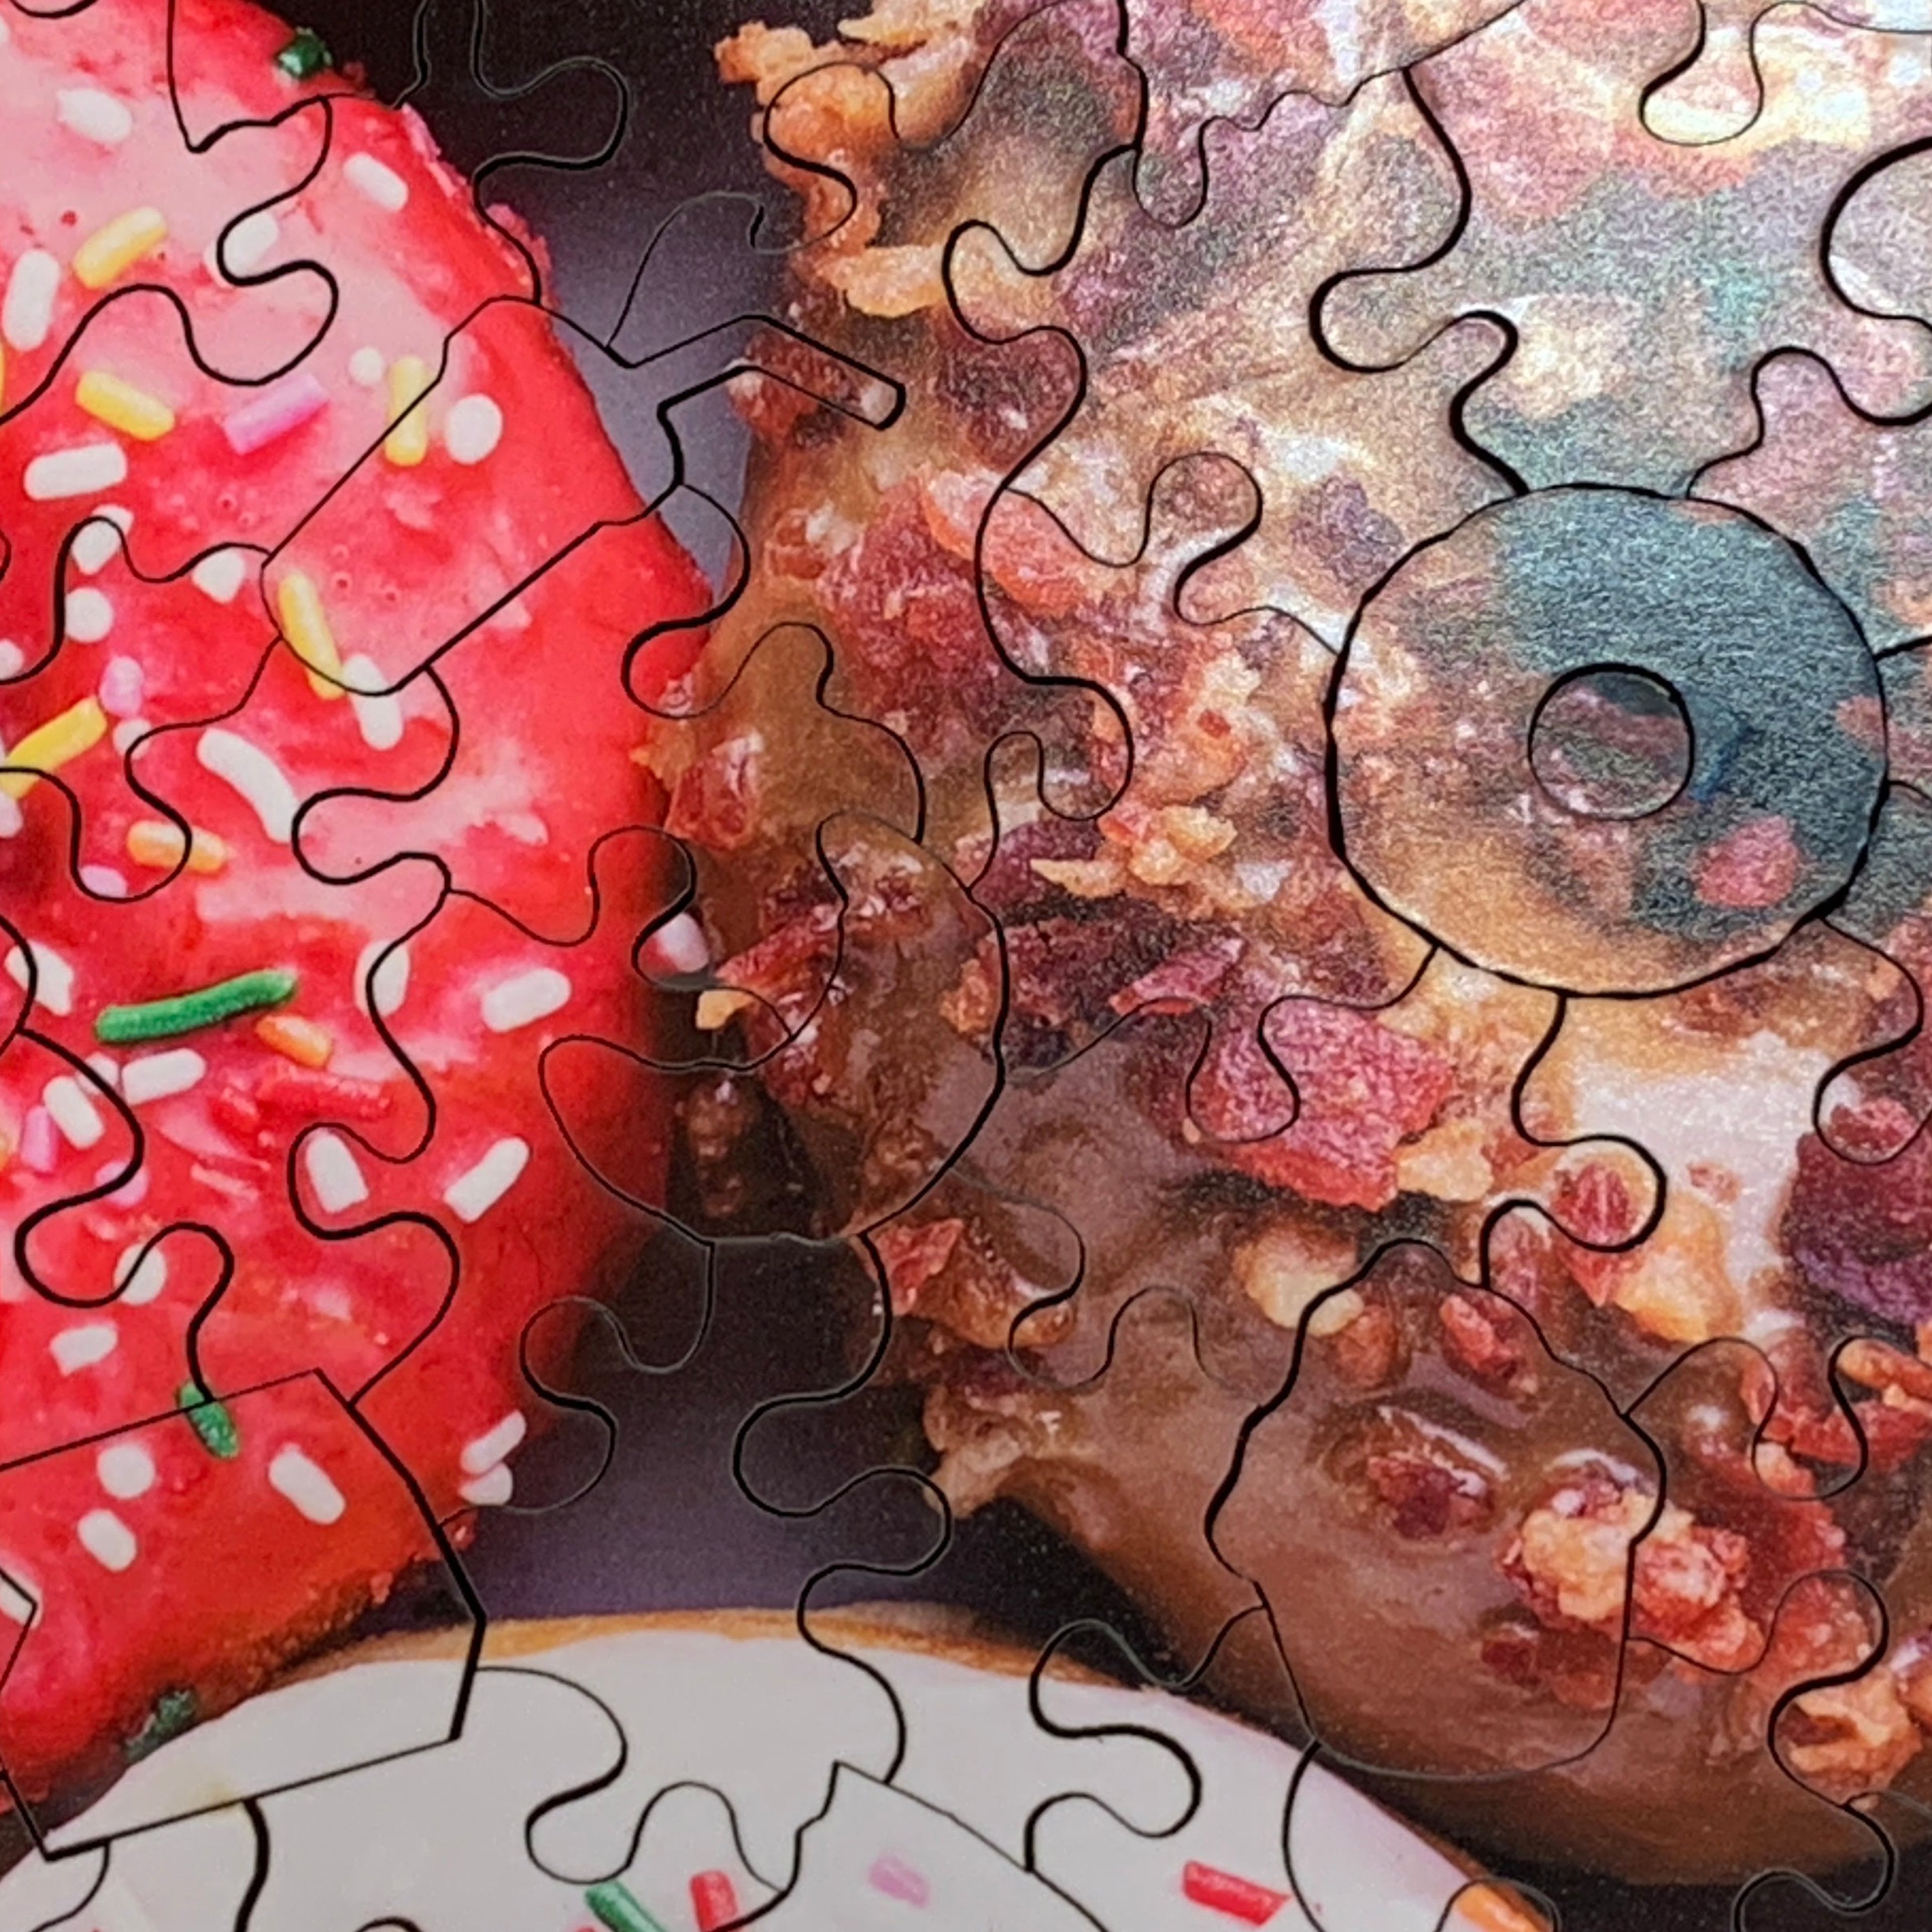 Donut Go Breakin' My Heart (186 Piece Wooden Jigsaw Puzzle)